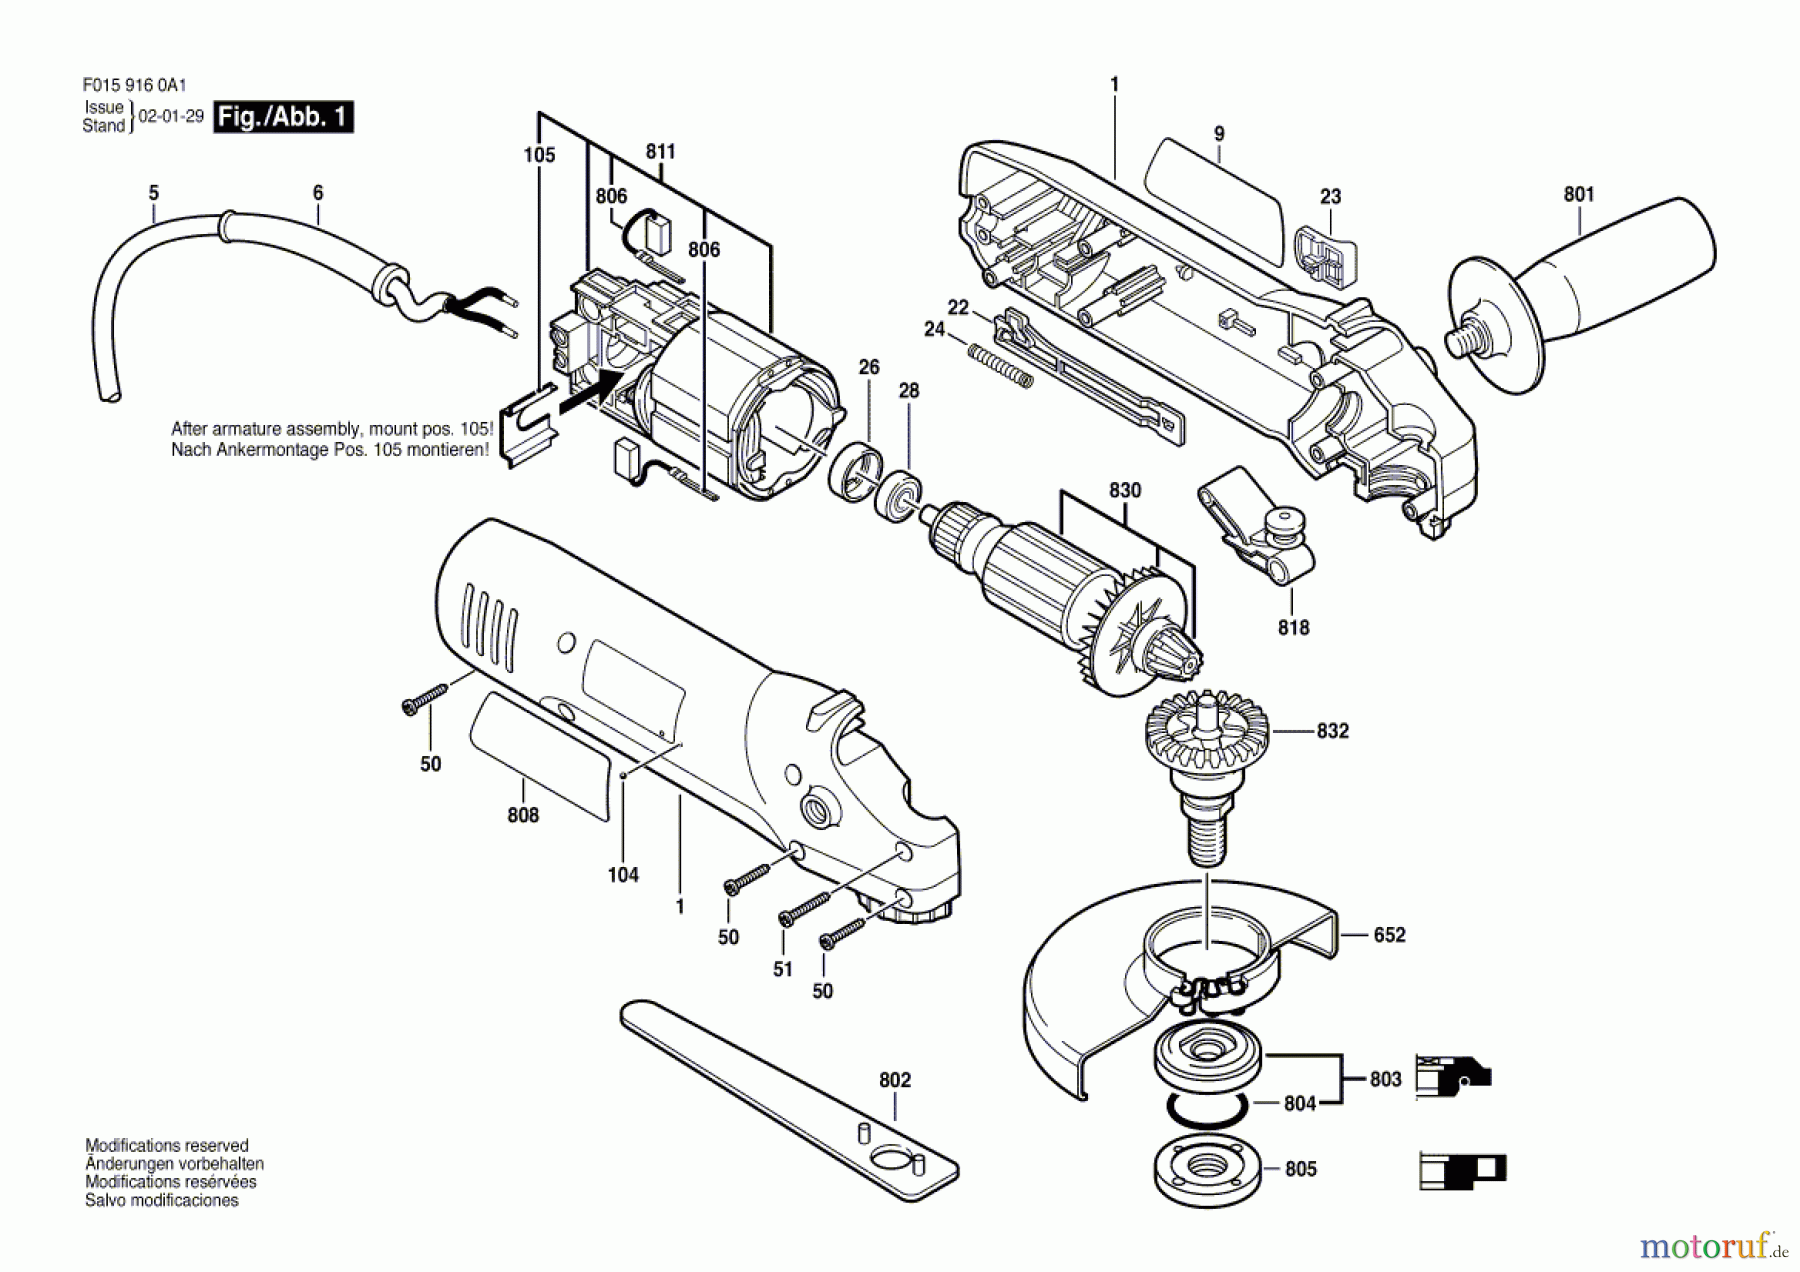  Bosch Werkzeug Winkelschleifer 9160 Seite 1